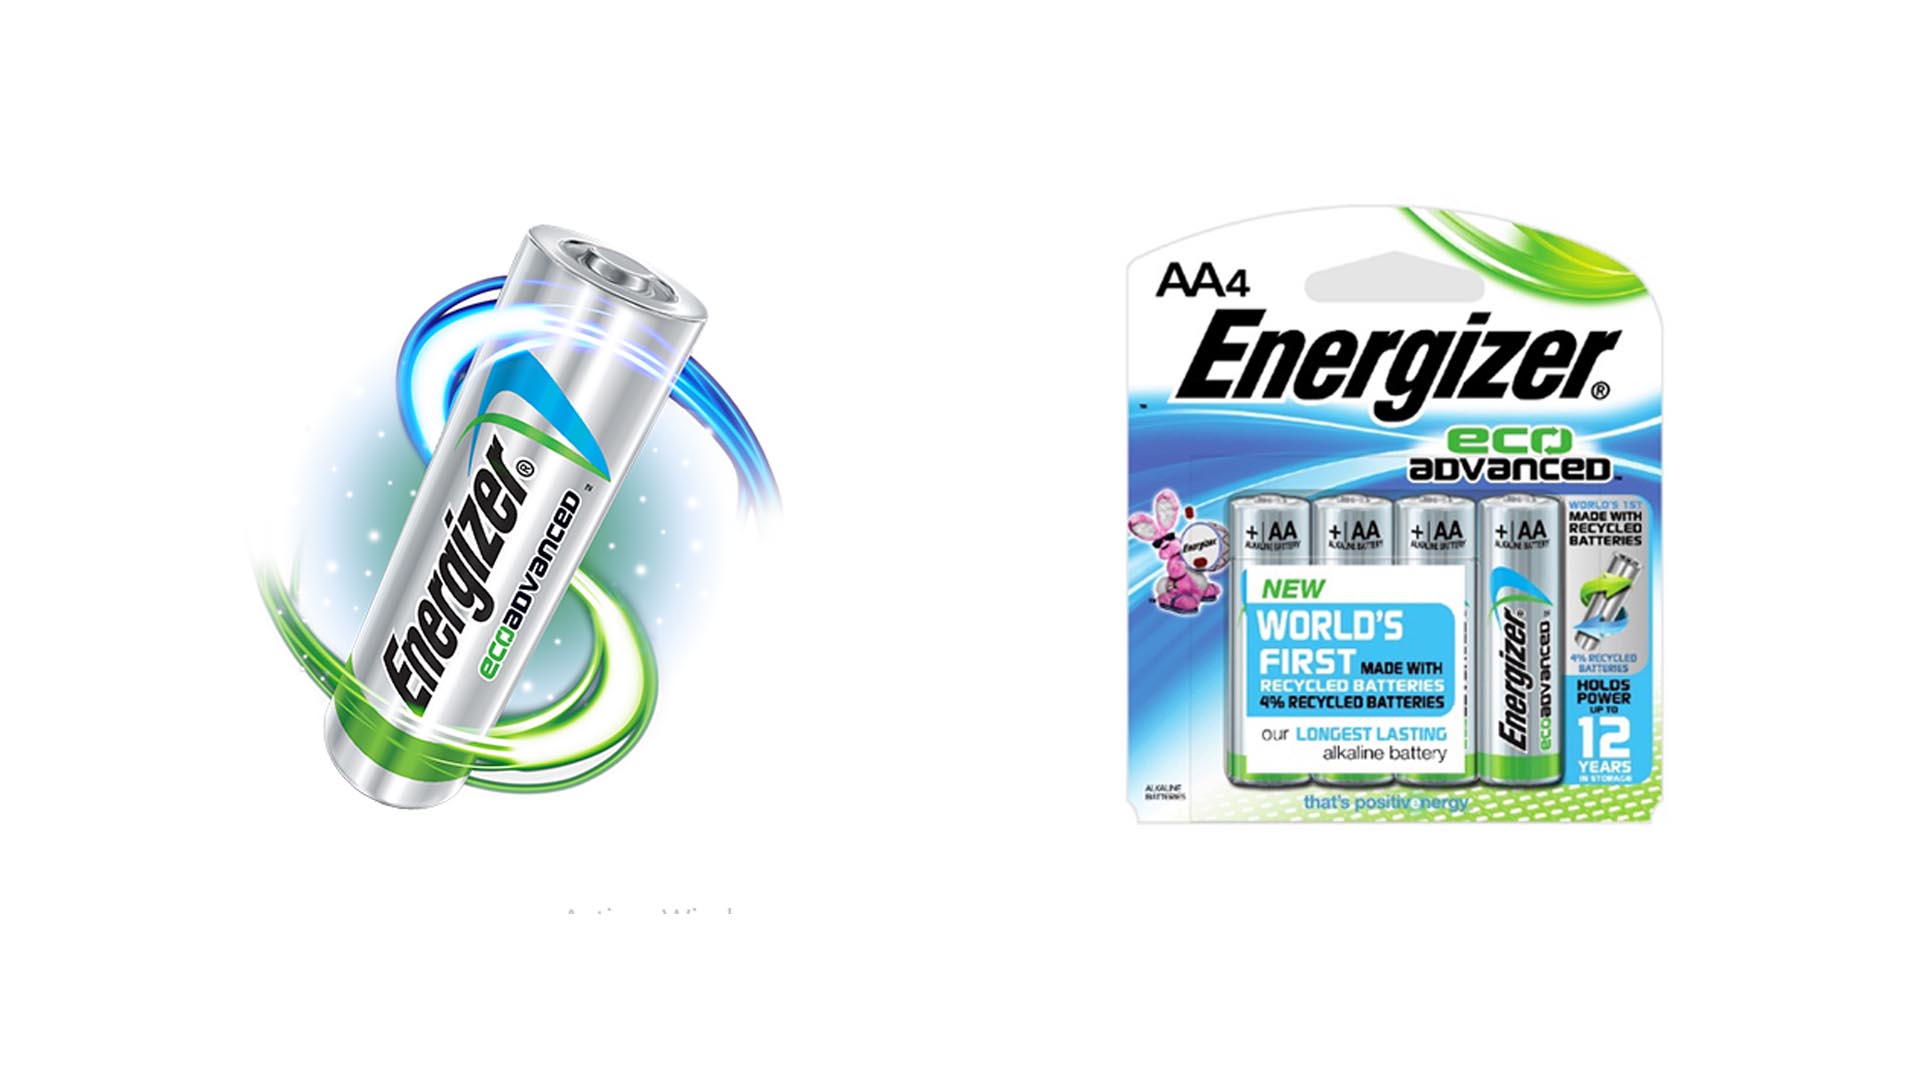 Las pilas Energizer EcoAdvanced fueron creadas con un 4% de material reciclado asegurando ser igual de útiles que las normales